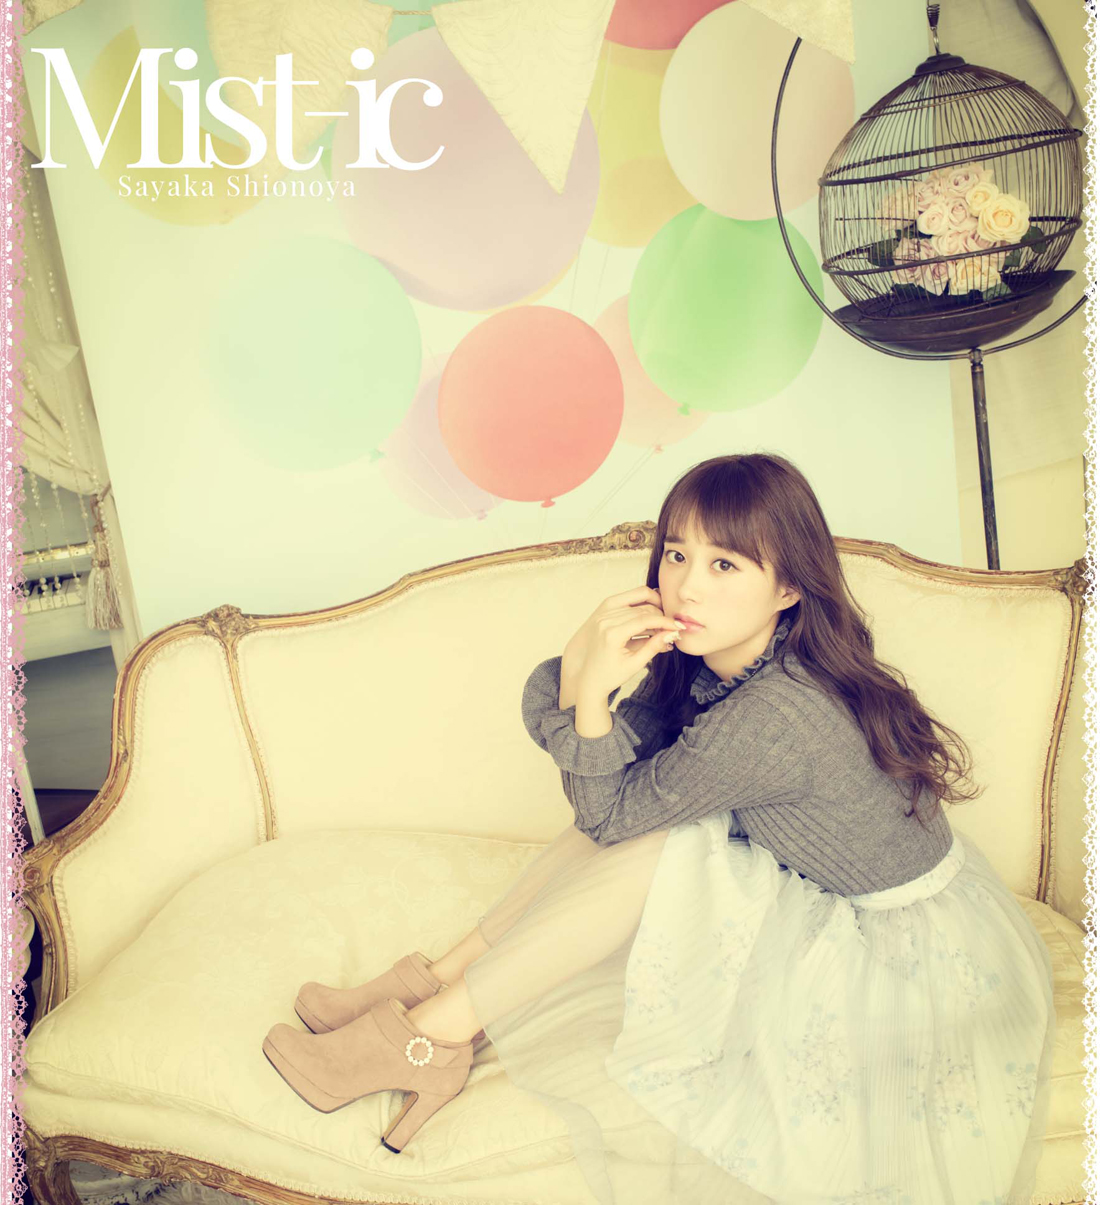 20180827.2008.09 Sayaka Shionoya - Mist-ic (FLAC) cover 1.jpg